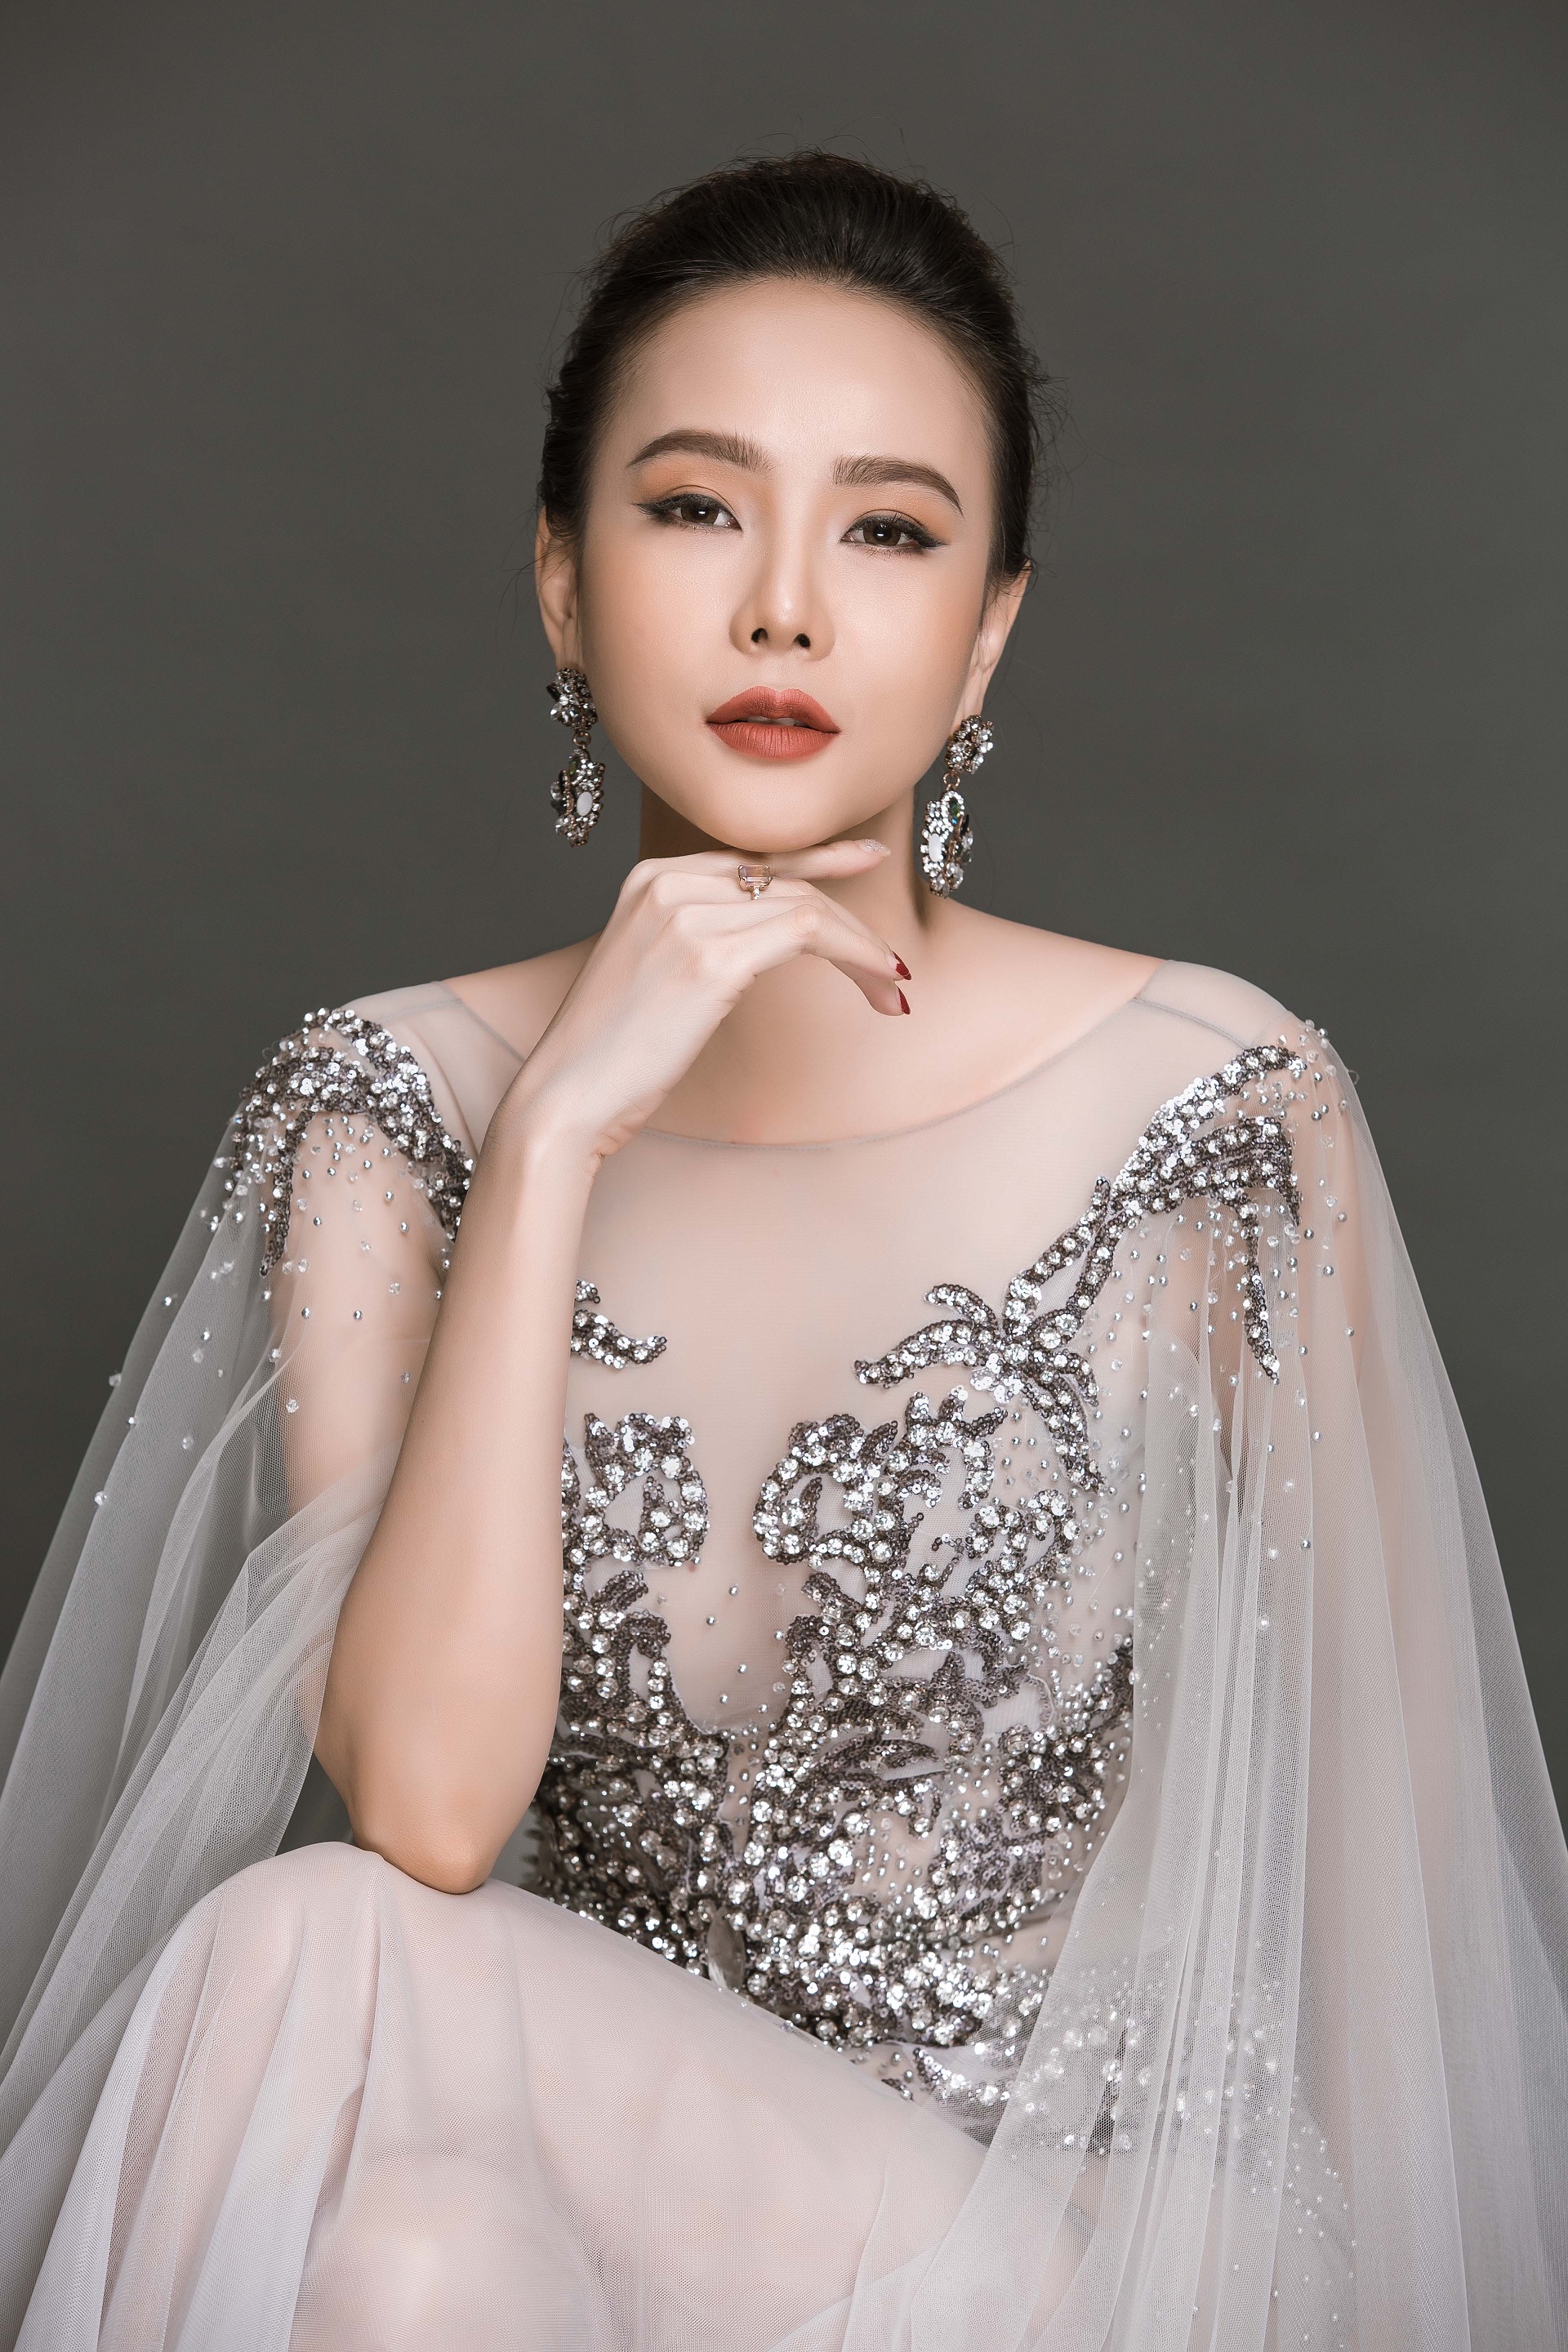 Dương Yến Ngọc đại diện Việt Nam thi Hoa Hậu Quý Bà 2017